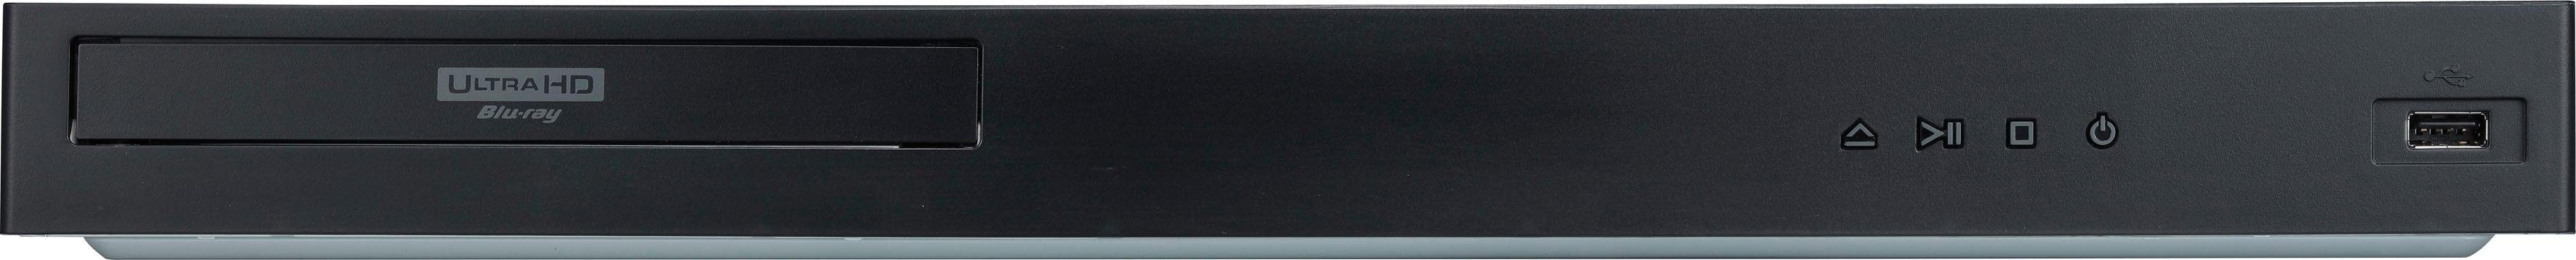 UBK90 WLAN, (4k LG Blu-ray-Player 4K HD, Upscaling) Ultra